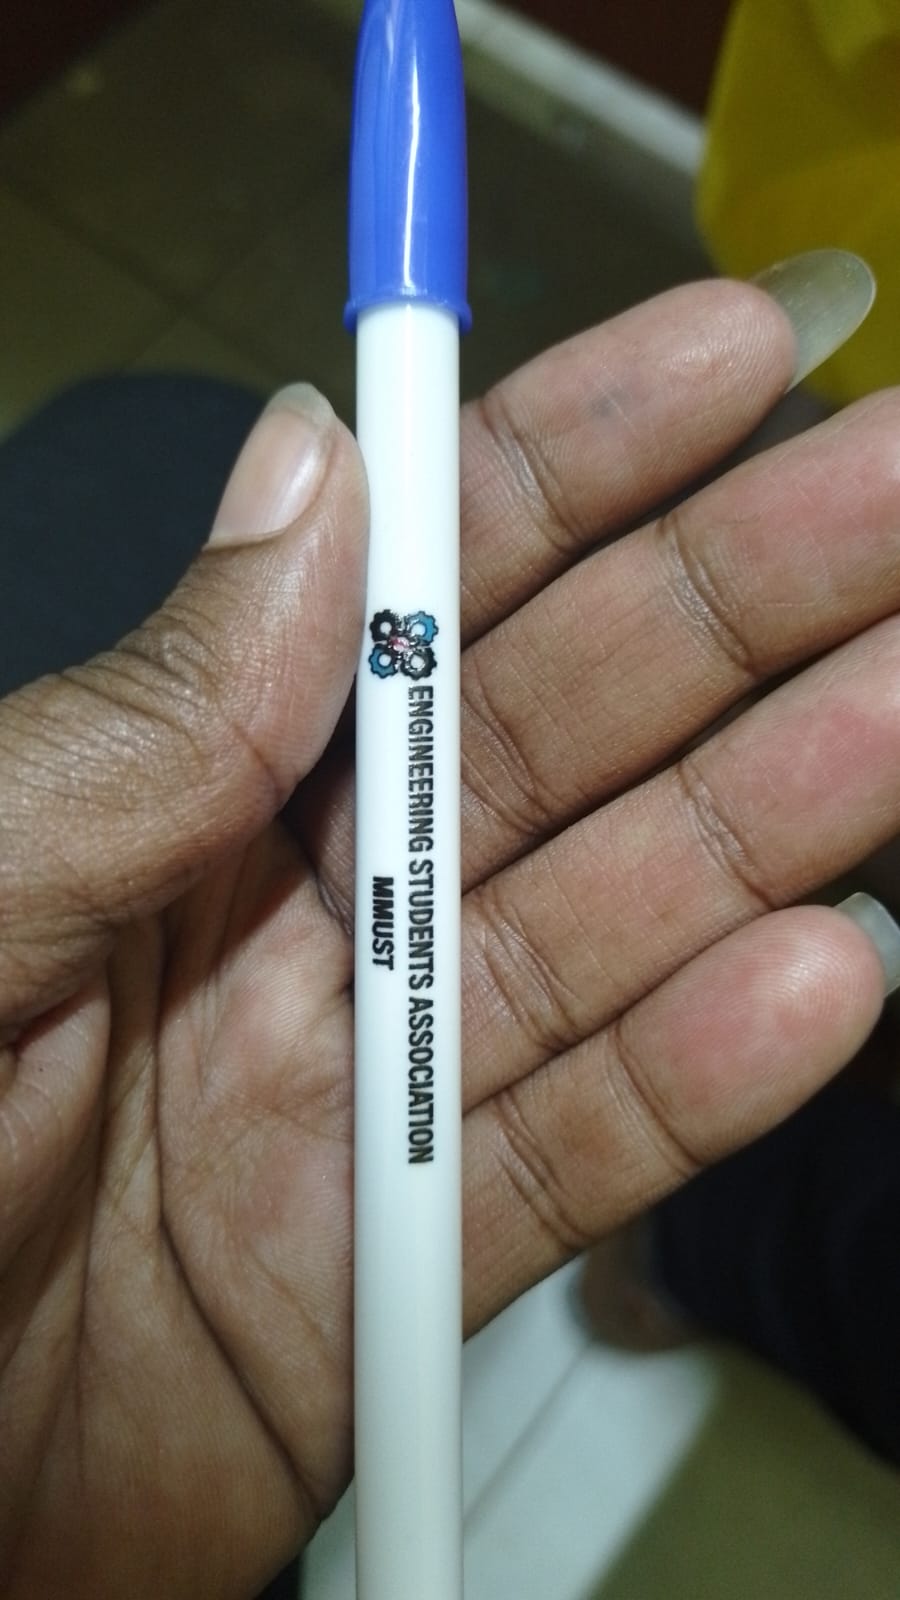 Bic pen branding